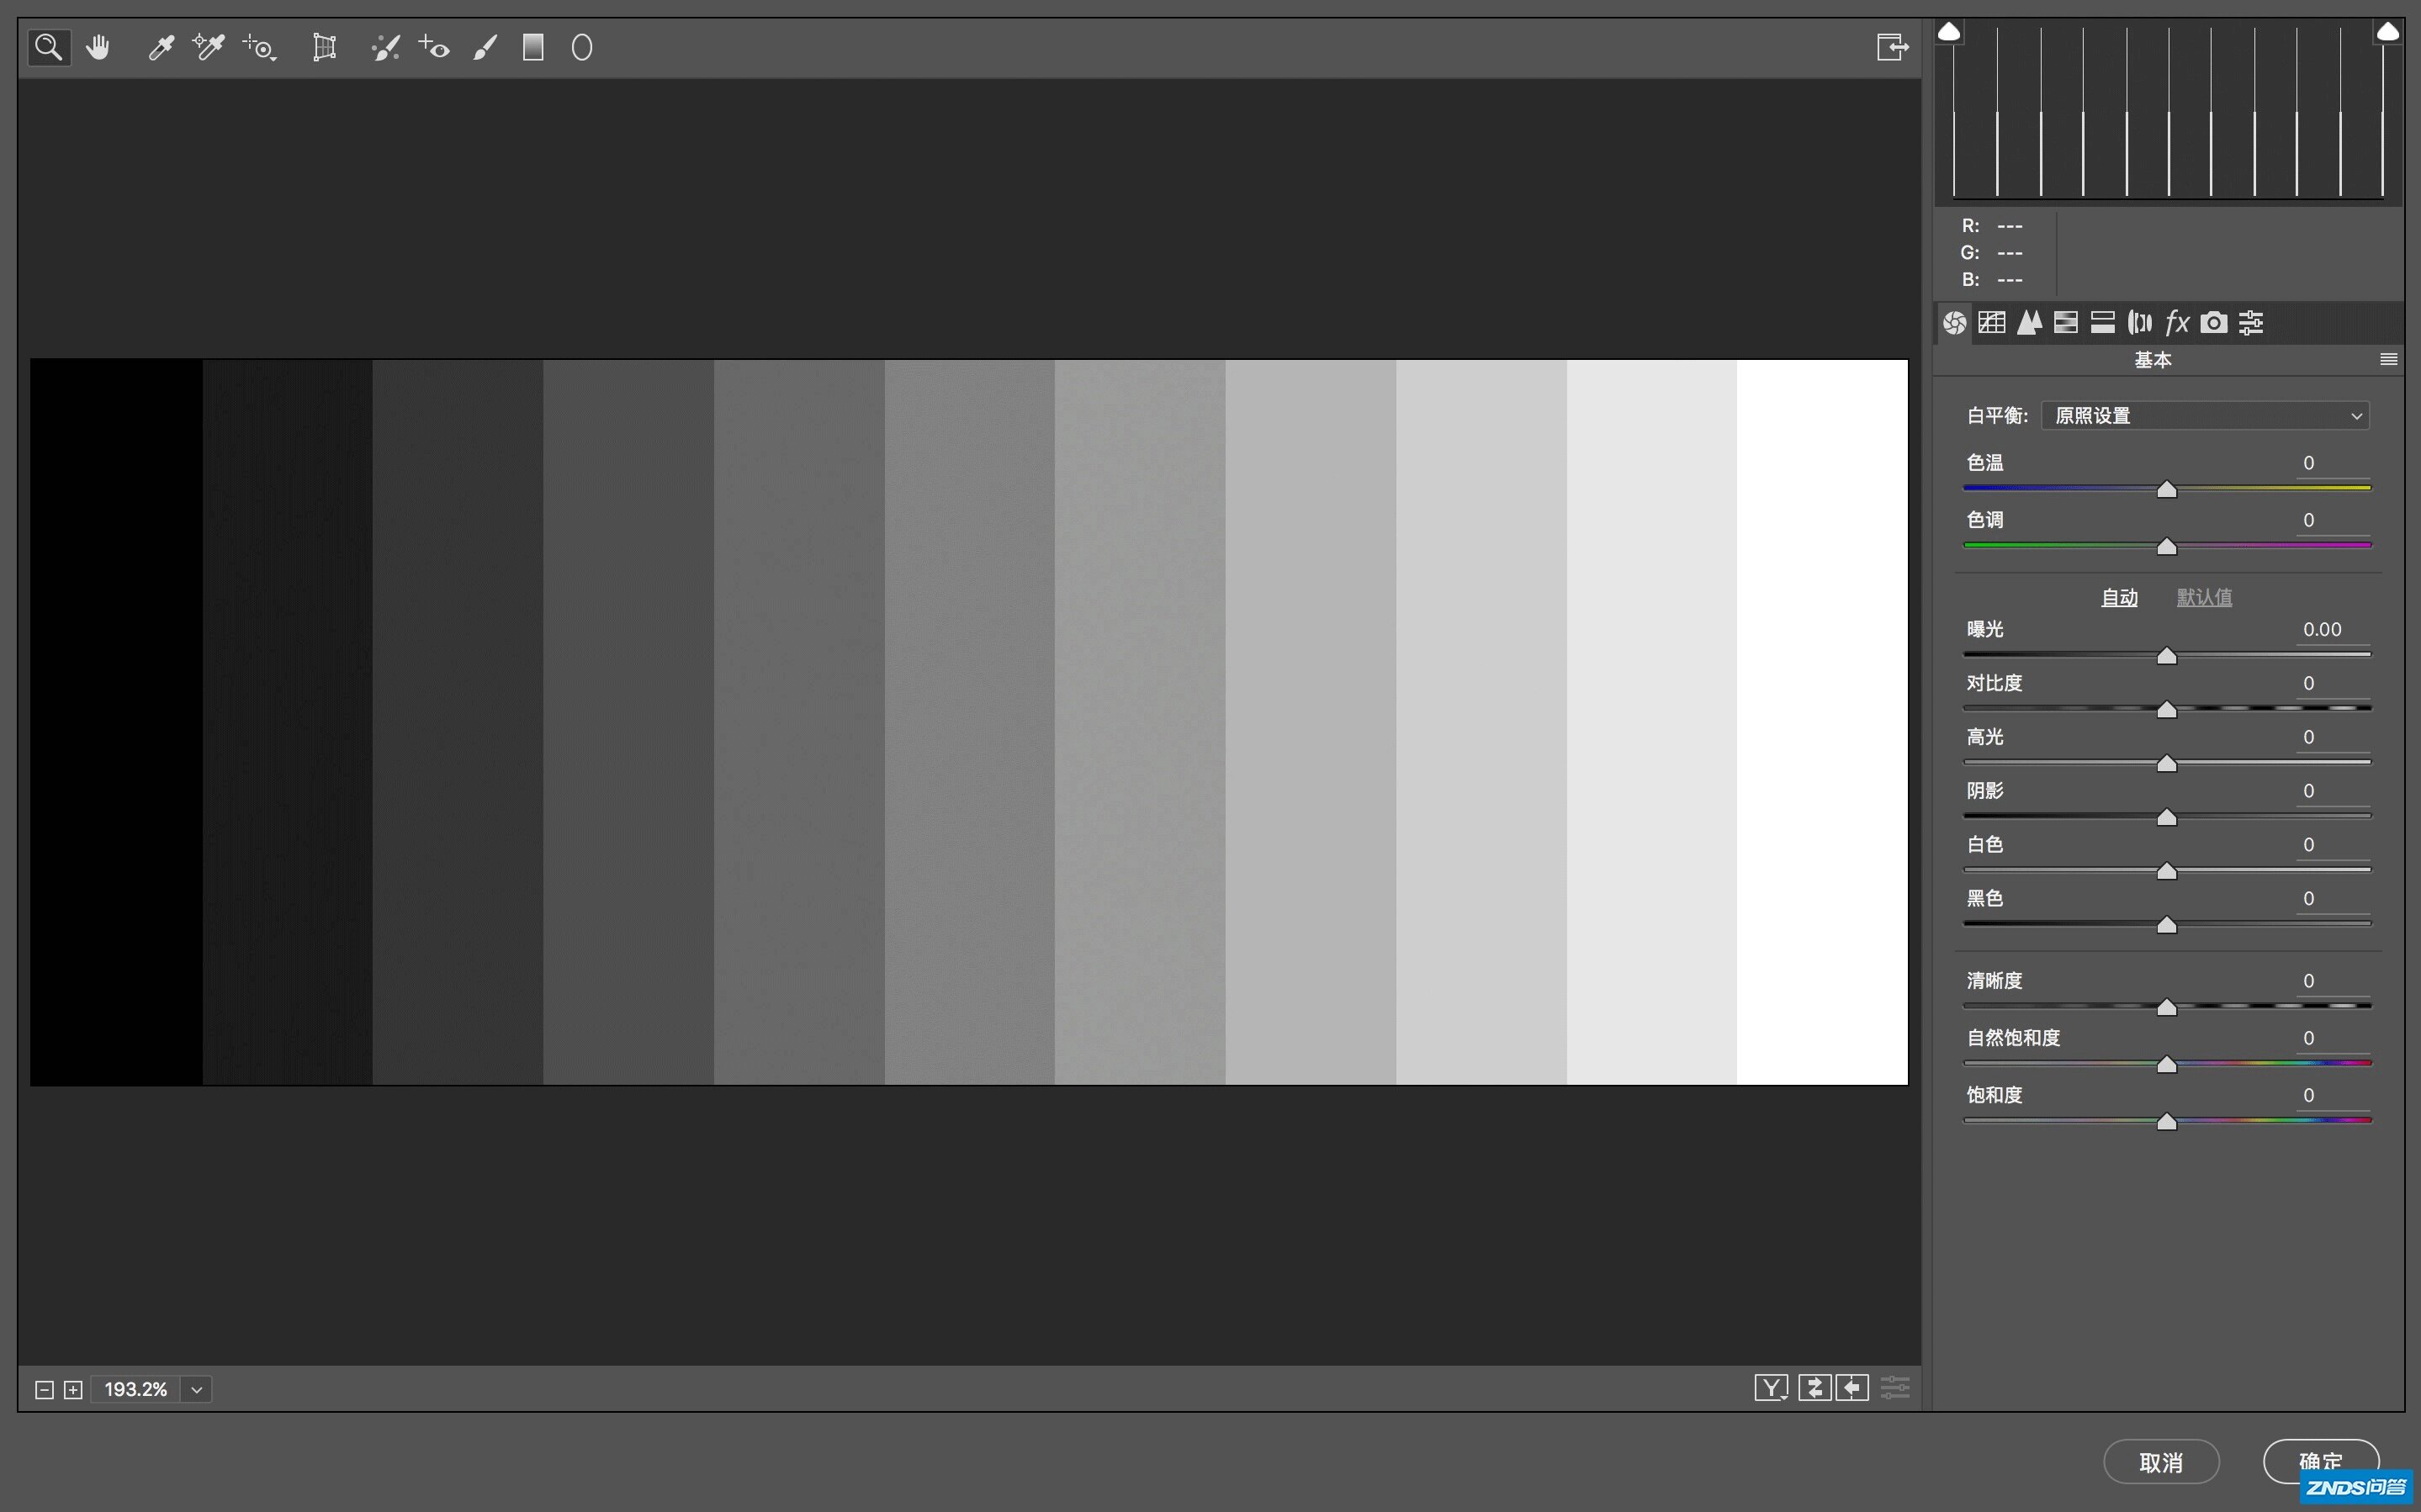 彩色图像转灰度图_灰度图转二值图_双峰法自动阈值二值化[Matlab]_彩色转灰度函数-CSDN博客